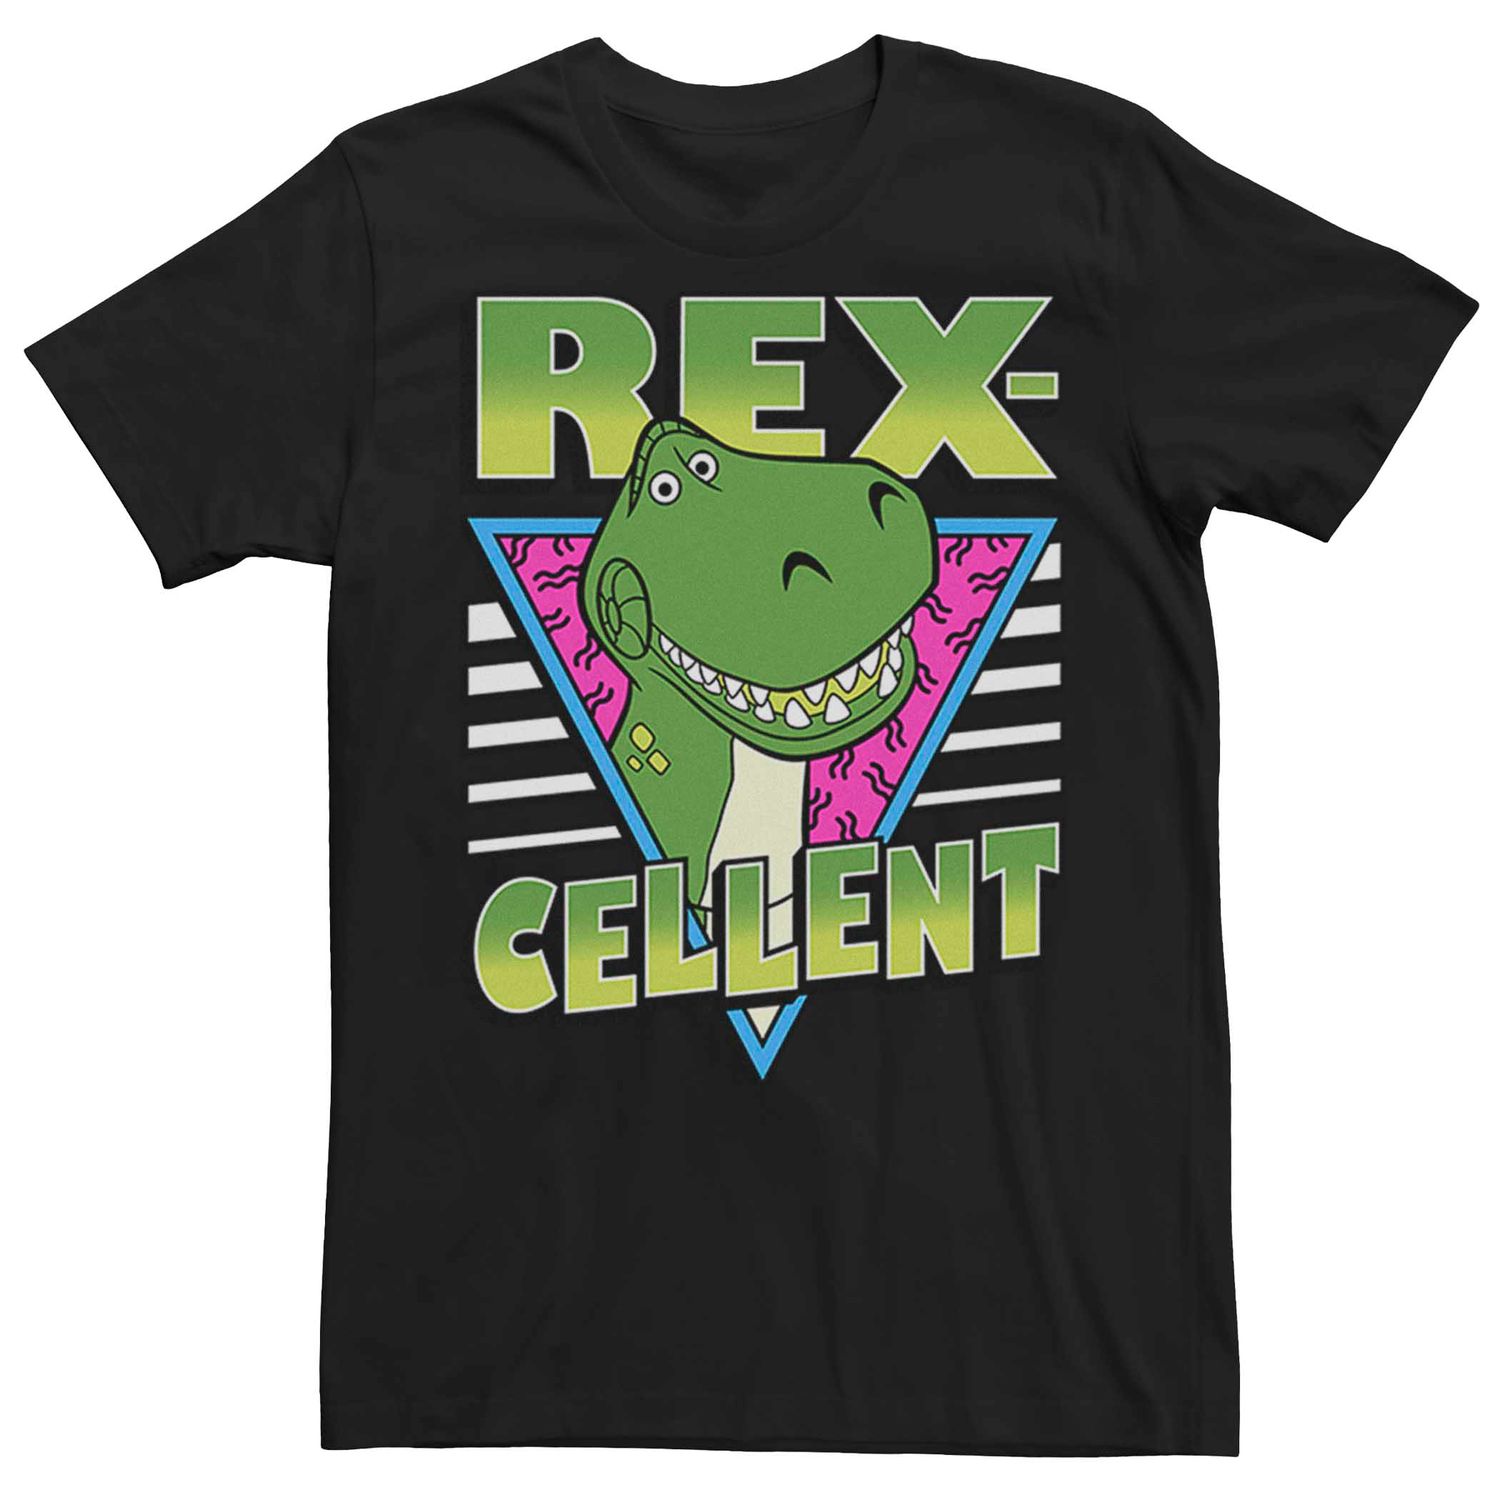 мужская футболка disney pixar toy story rex face licensed character Мужская футболка в стиле ретро Disney Pixar Toy Story Rex-Cellent Licensed Character